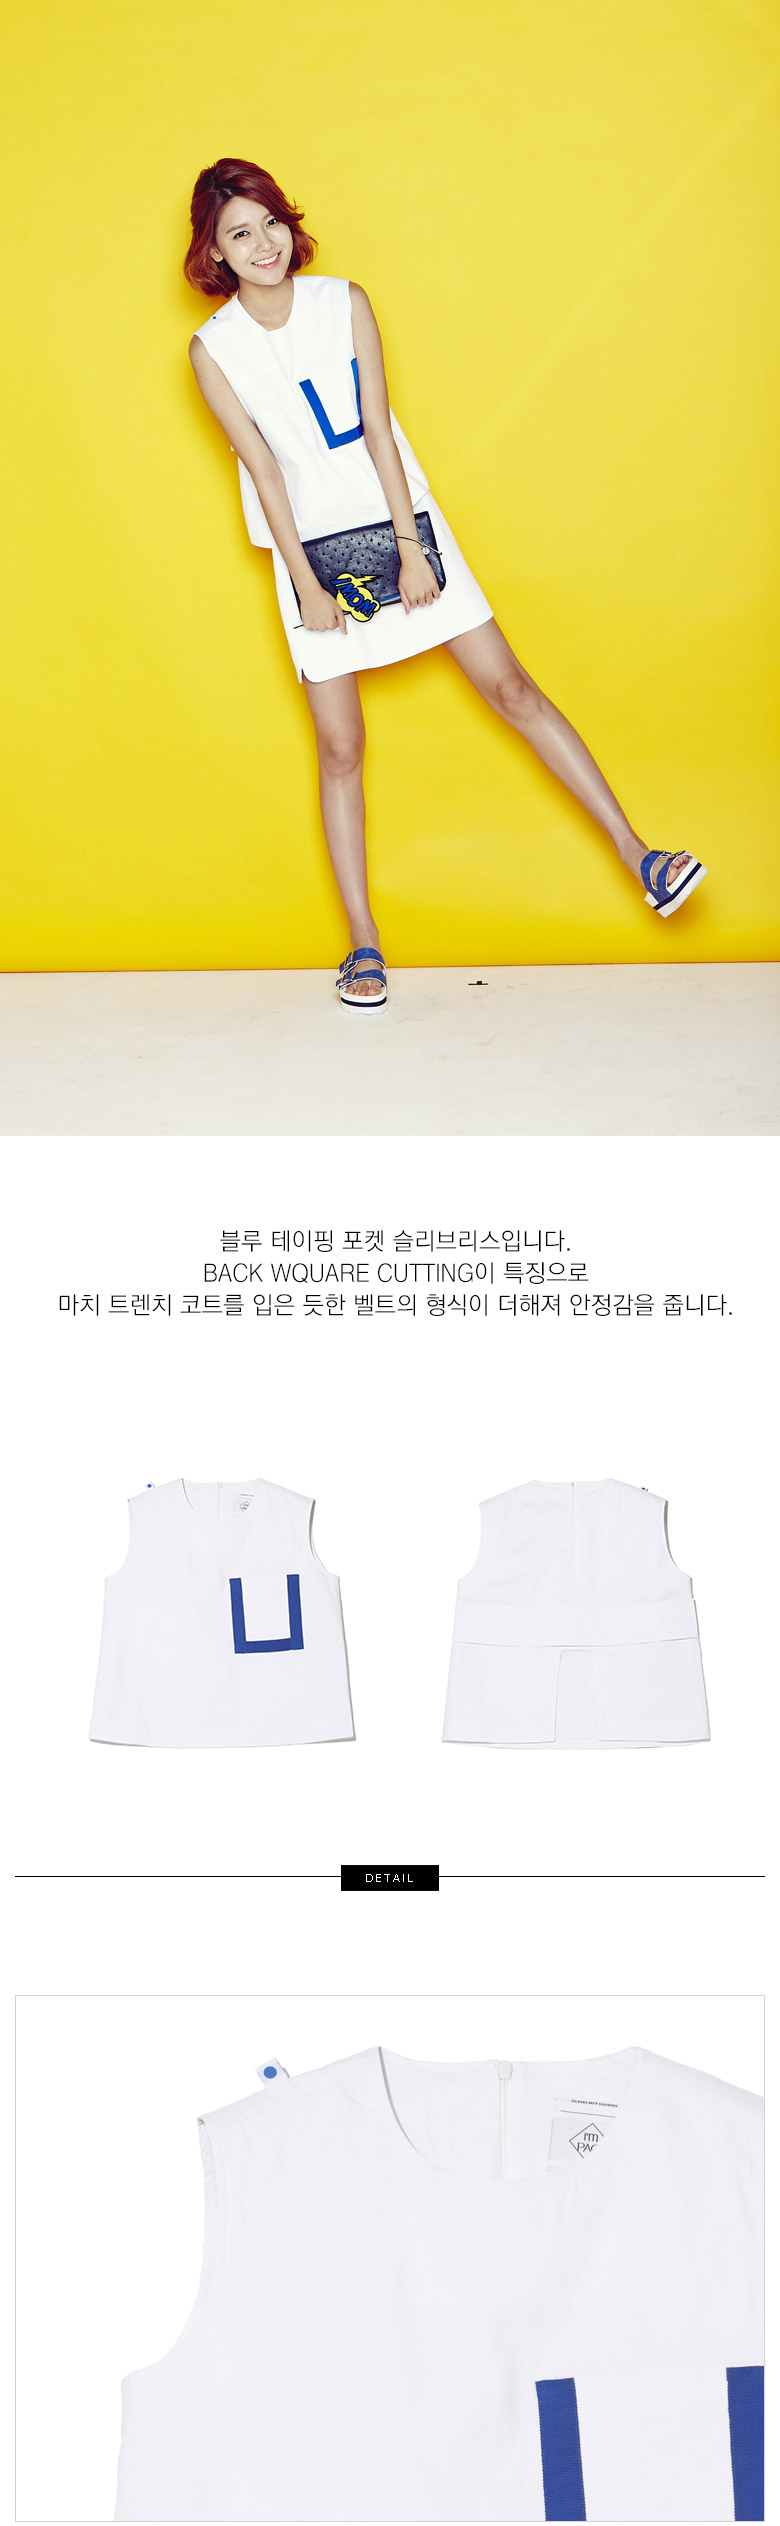 [OTHER][02-06-2015]SooYoung trở thành người mẫu mới cho "Tom Genty 2015 S/S Coupang Shopping" 52c96a60-f4e8-4f99-b0d6-6aca9d758b7d